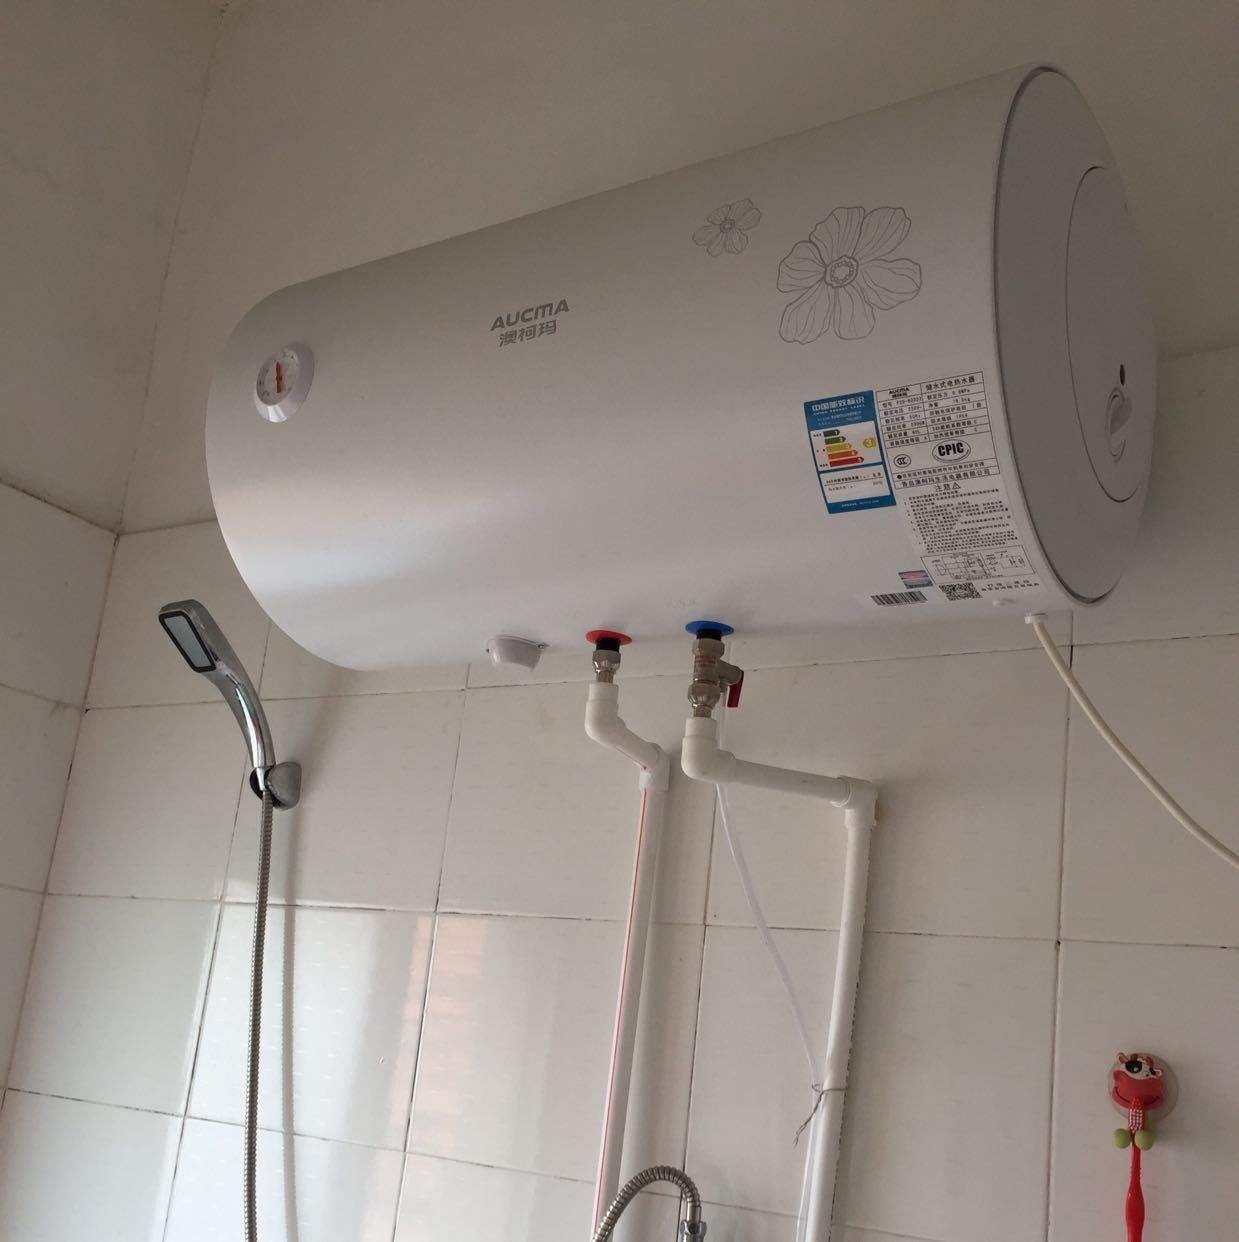 燃气热水器不出热水的原因及解决办法 (燃气热水器不能打火怎么办 燃气热水器打不着火是什么原因)